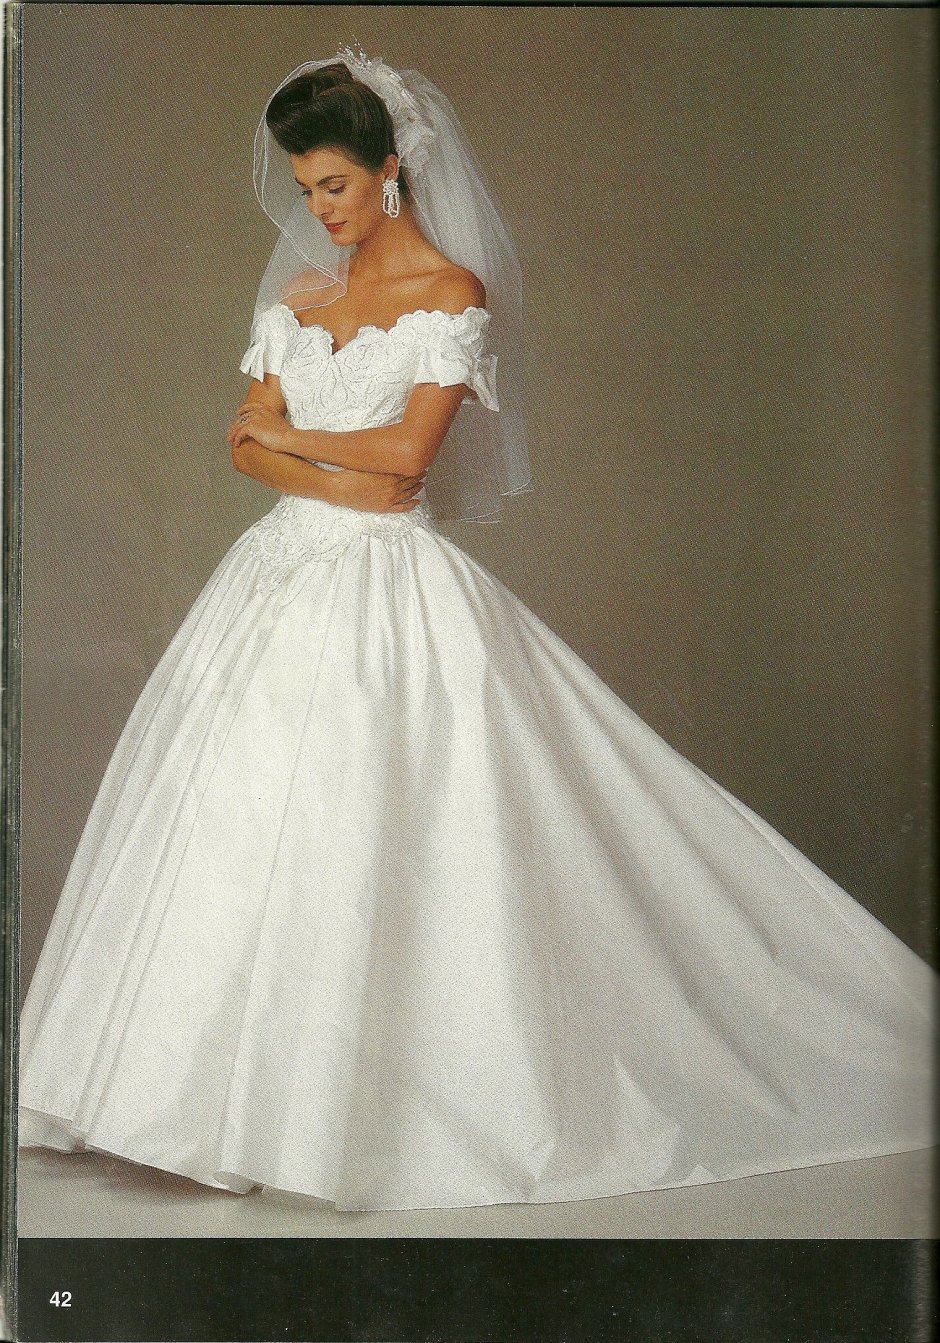 Синди Кроуфорд в платье невесты